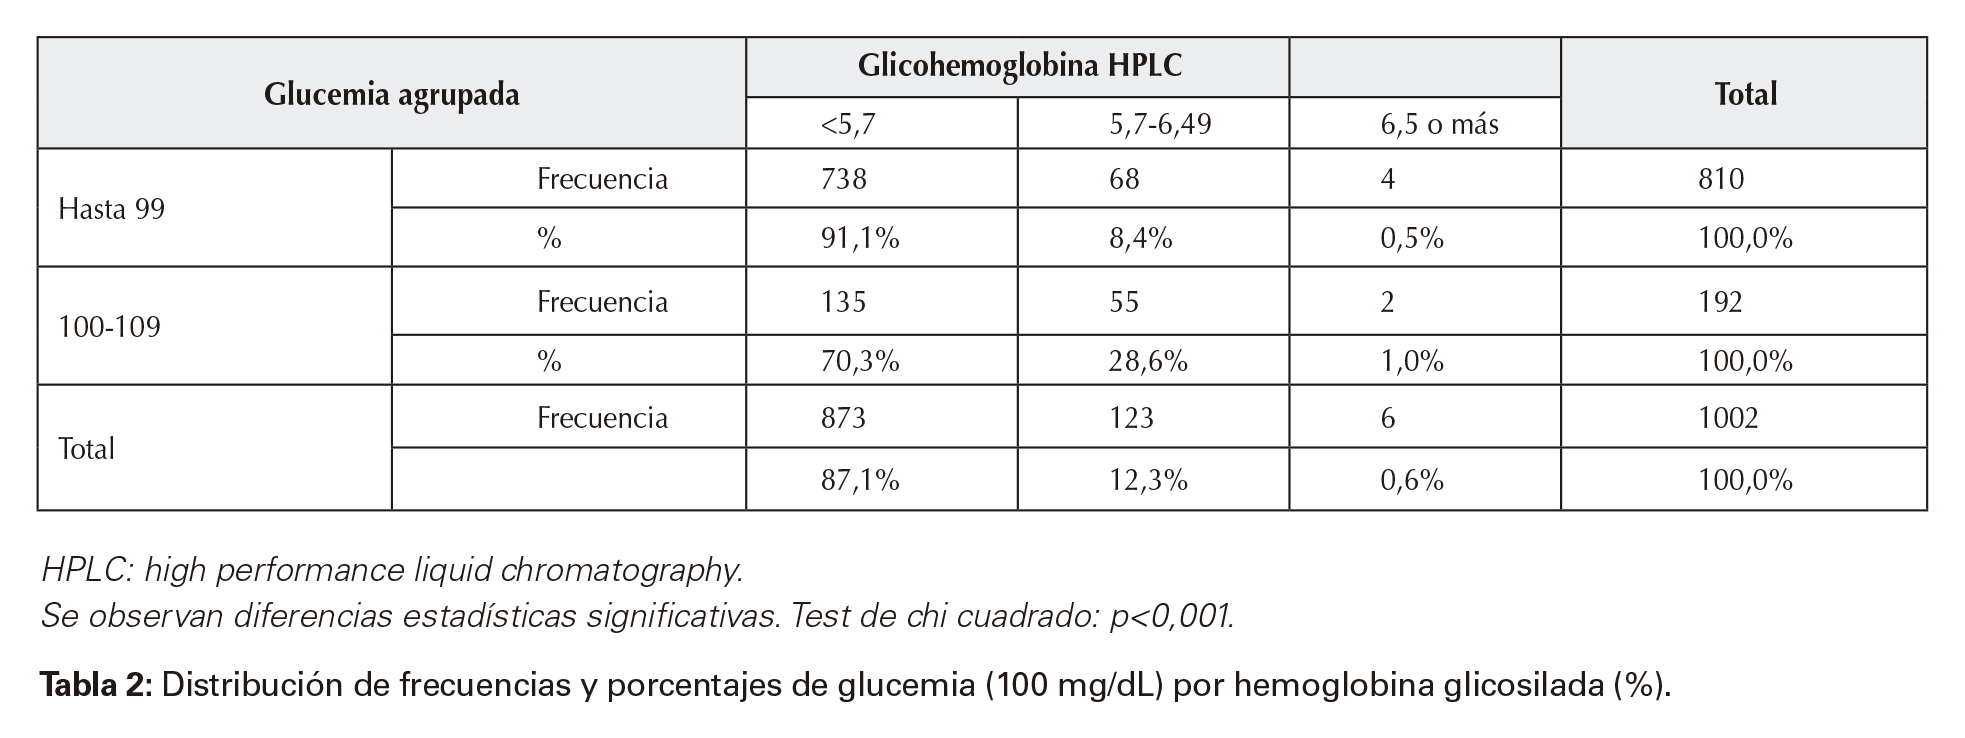 Distribución de frecuencias y porcentajes de glucemia (100mg/dL) por hemoglobina glicosilada (%).